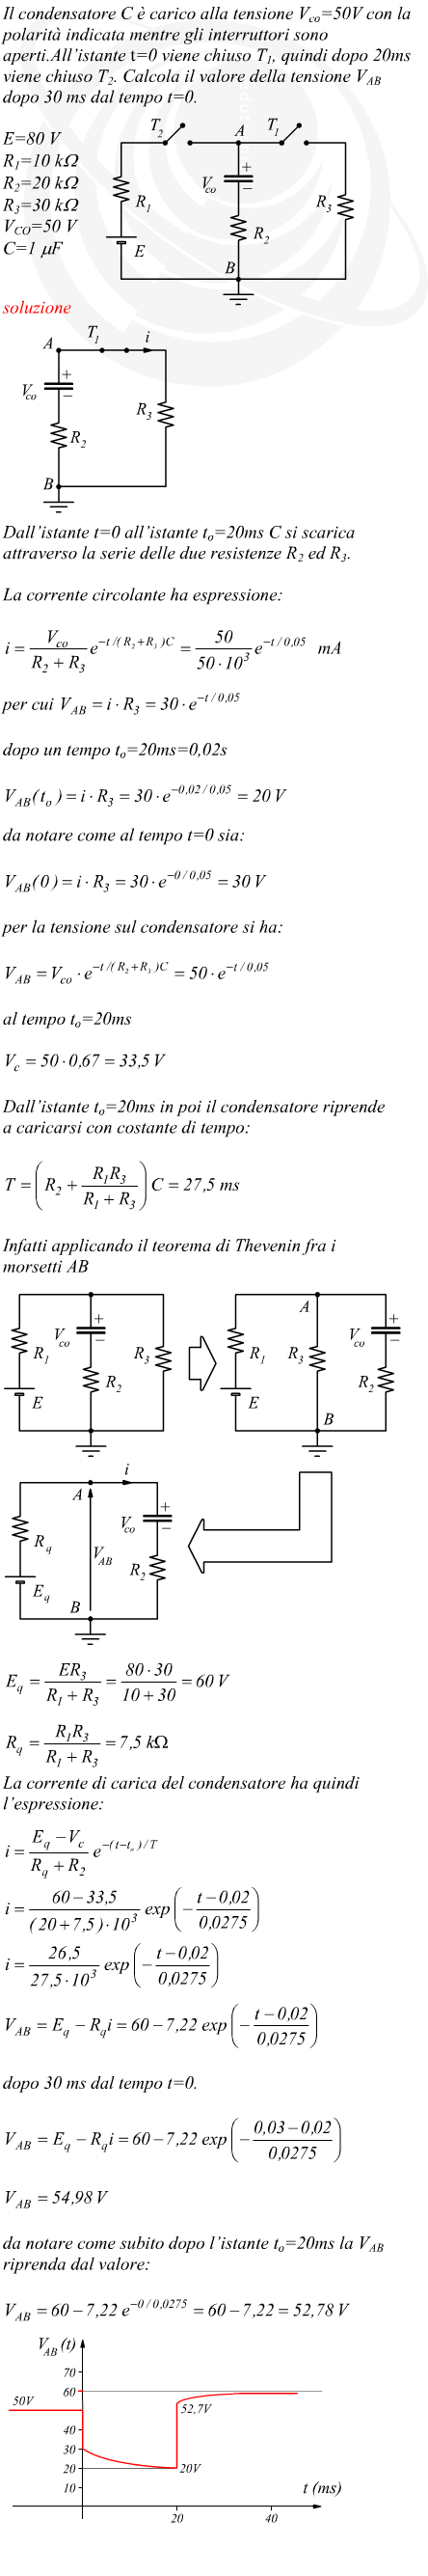 Variazioni di tensione durante un transitorio di carica e scarica di un condensatore